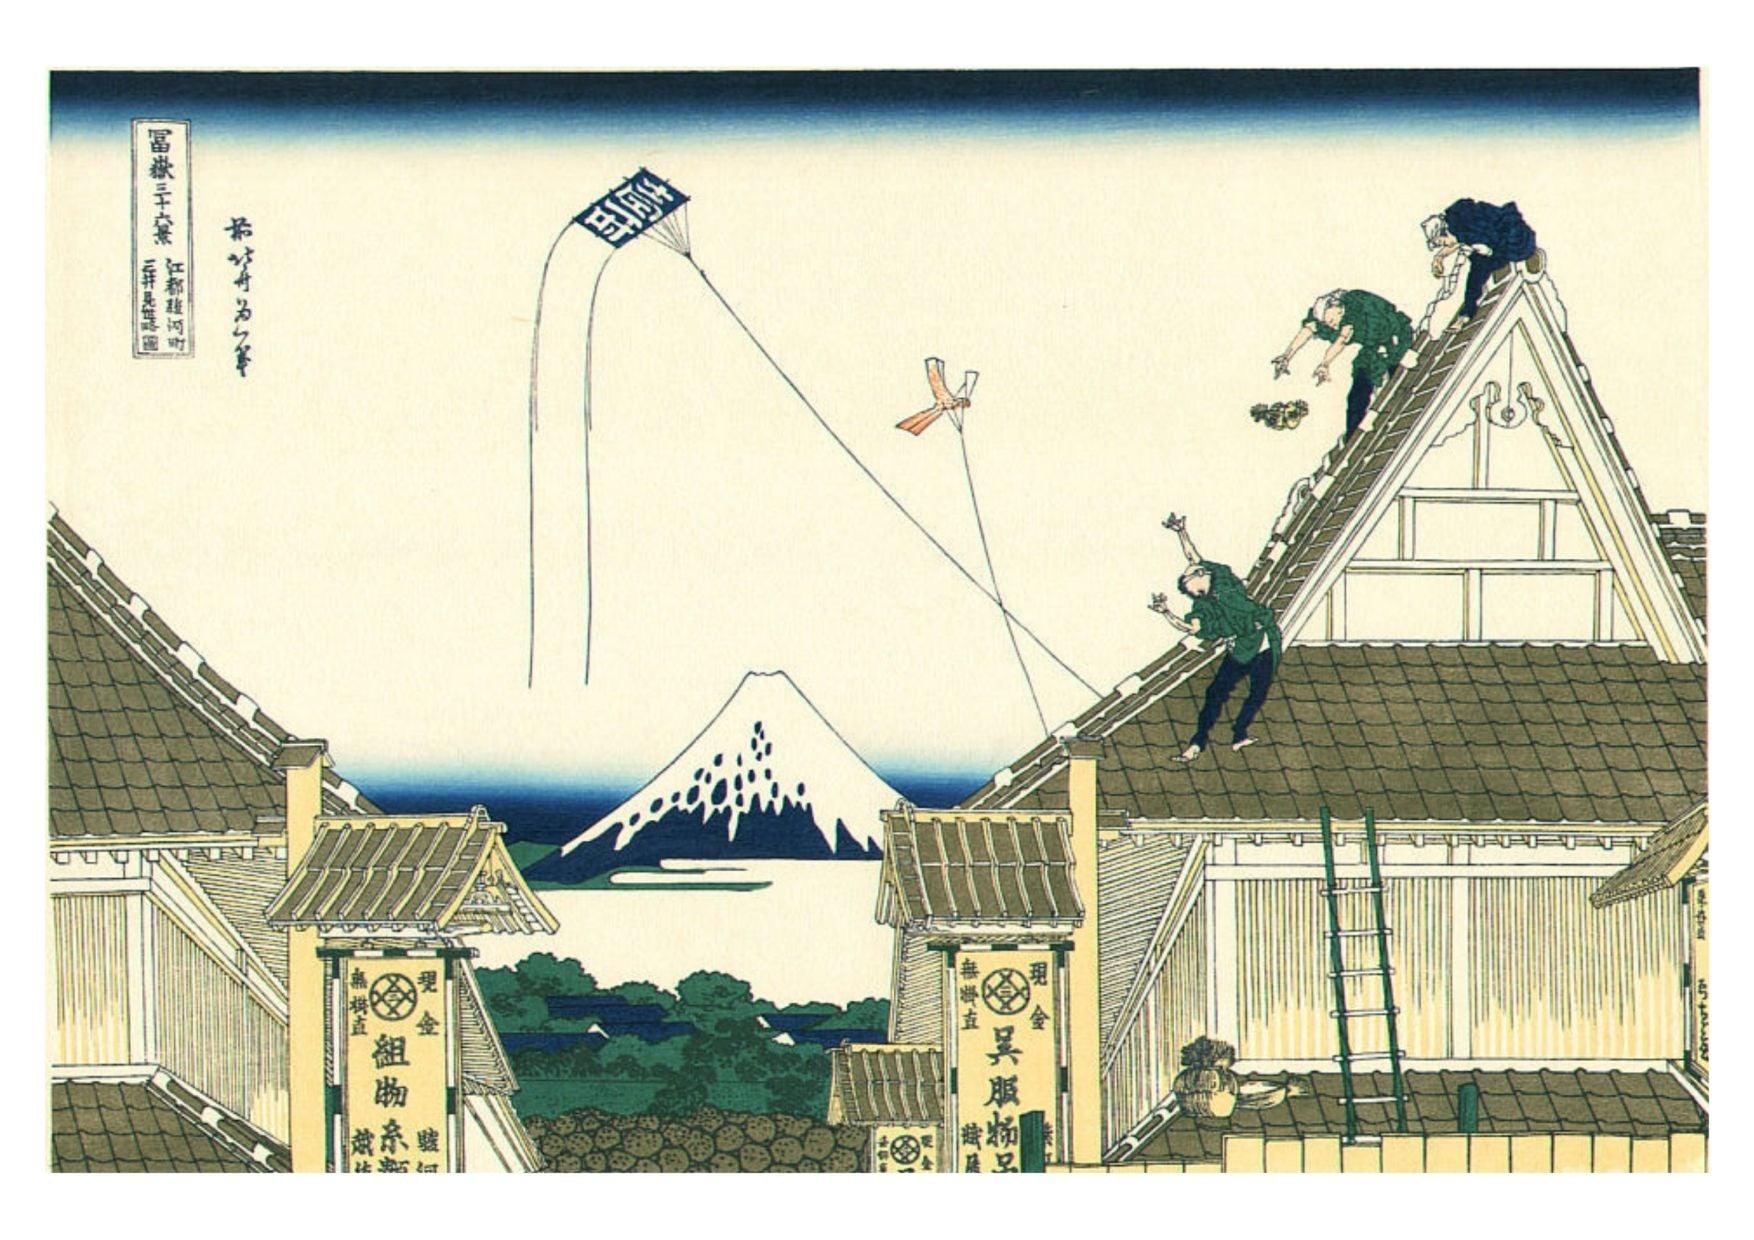 36 Views of Mt Fuji - Hokusai - Digital Download